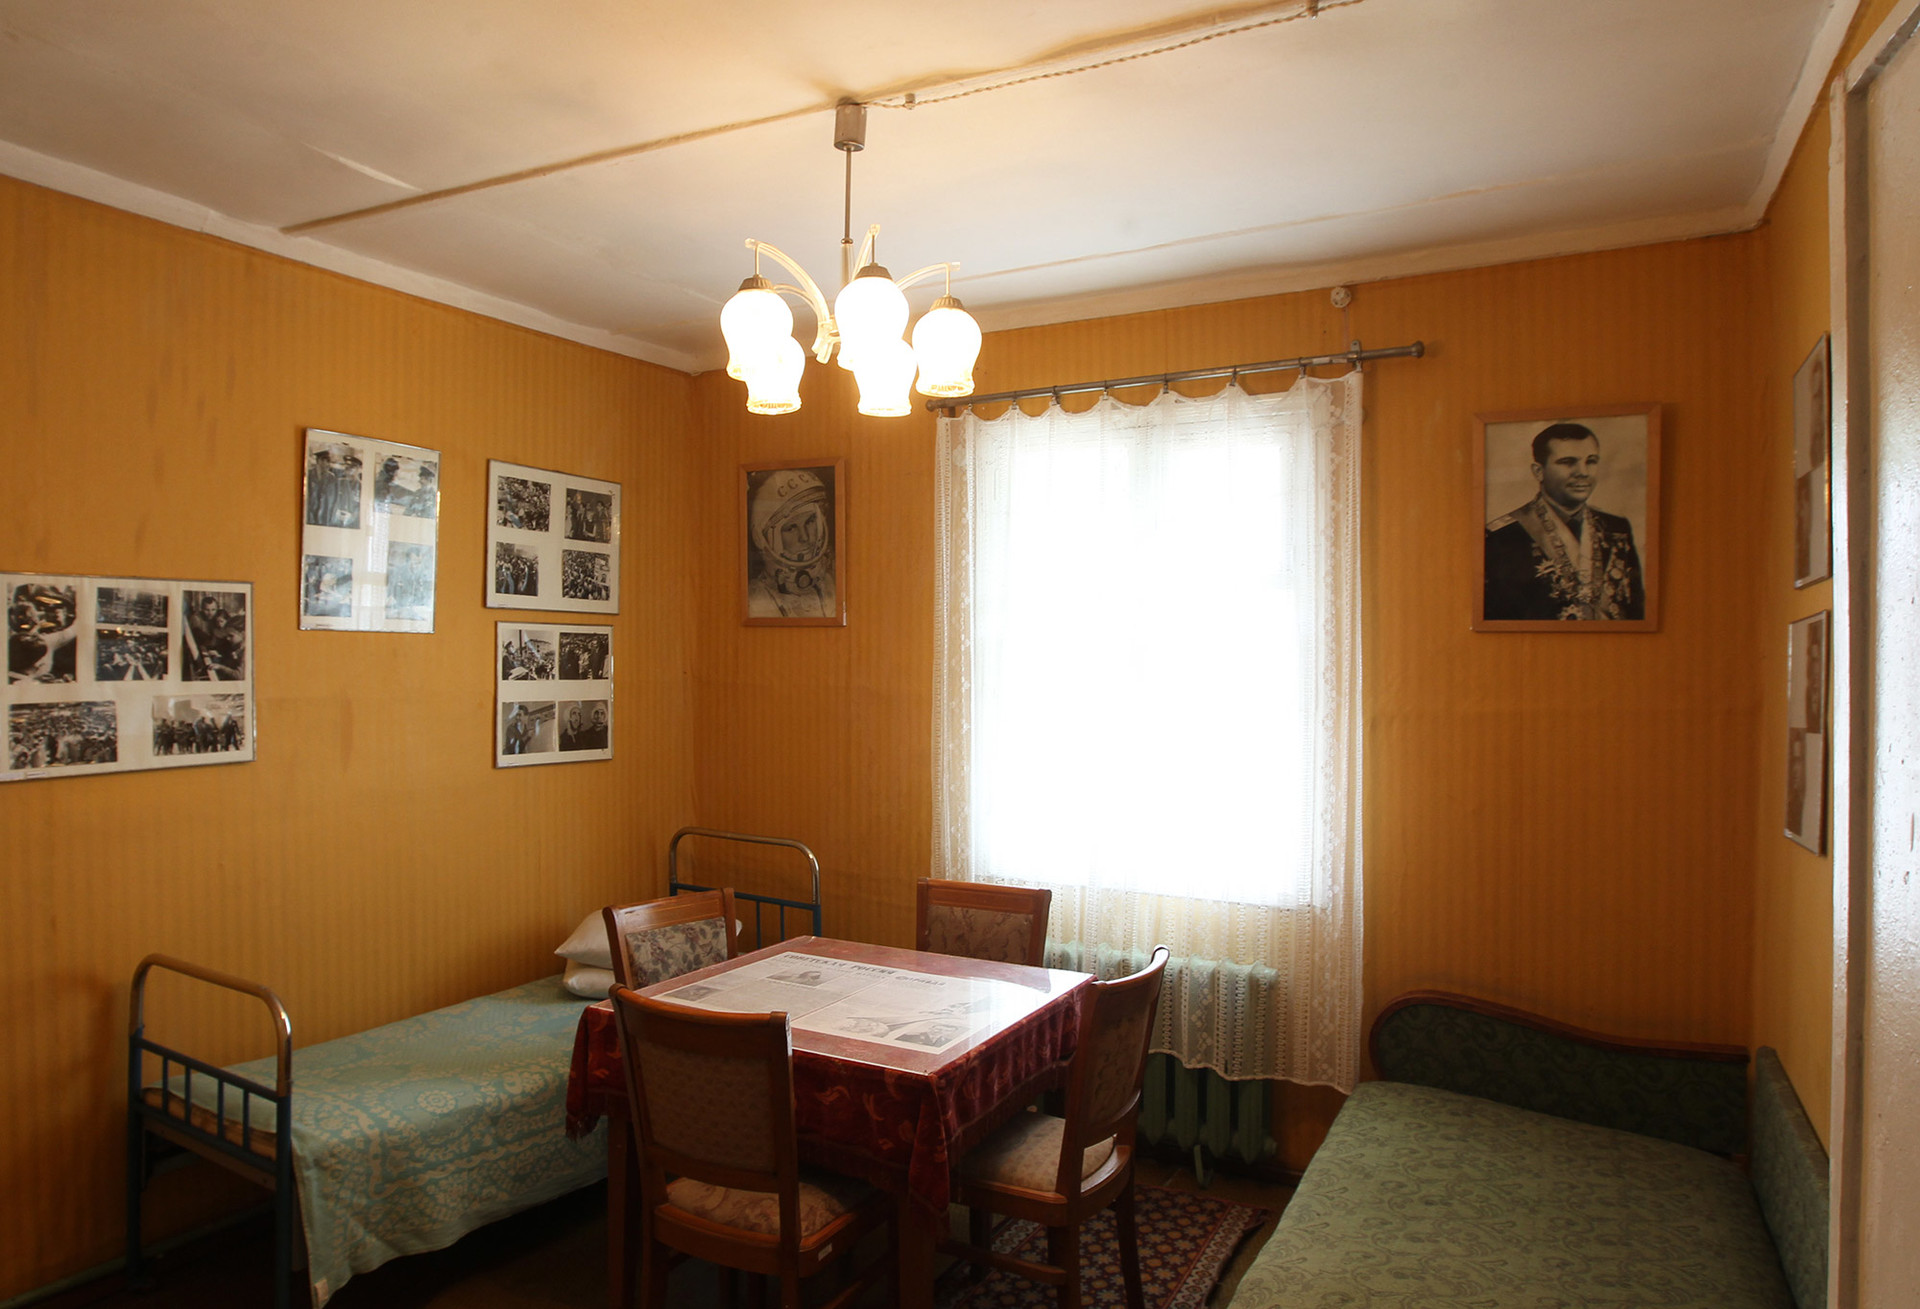 ユーリイ・ガガーリンの家のインテリア。バイコヌール博物館の展示物の一部。